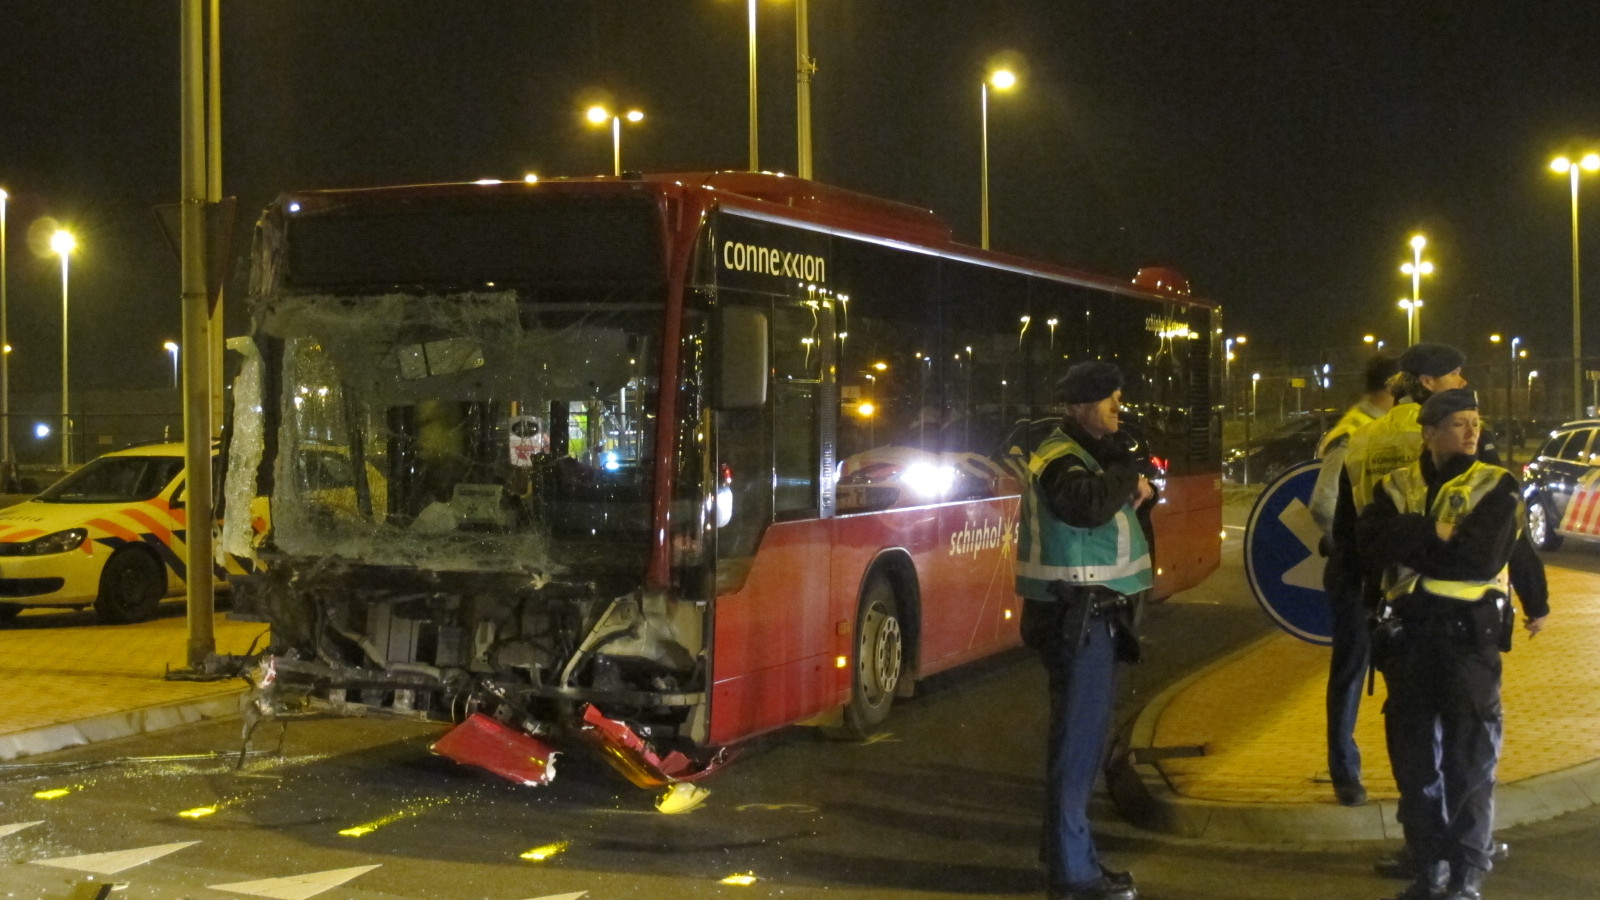 Bussen botsen op elkaar bij Schiphol